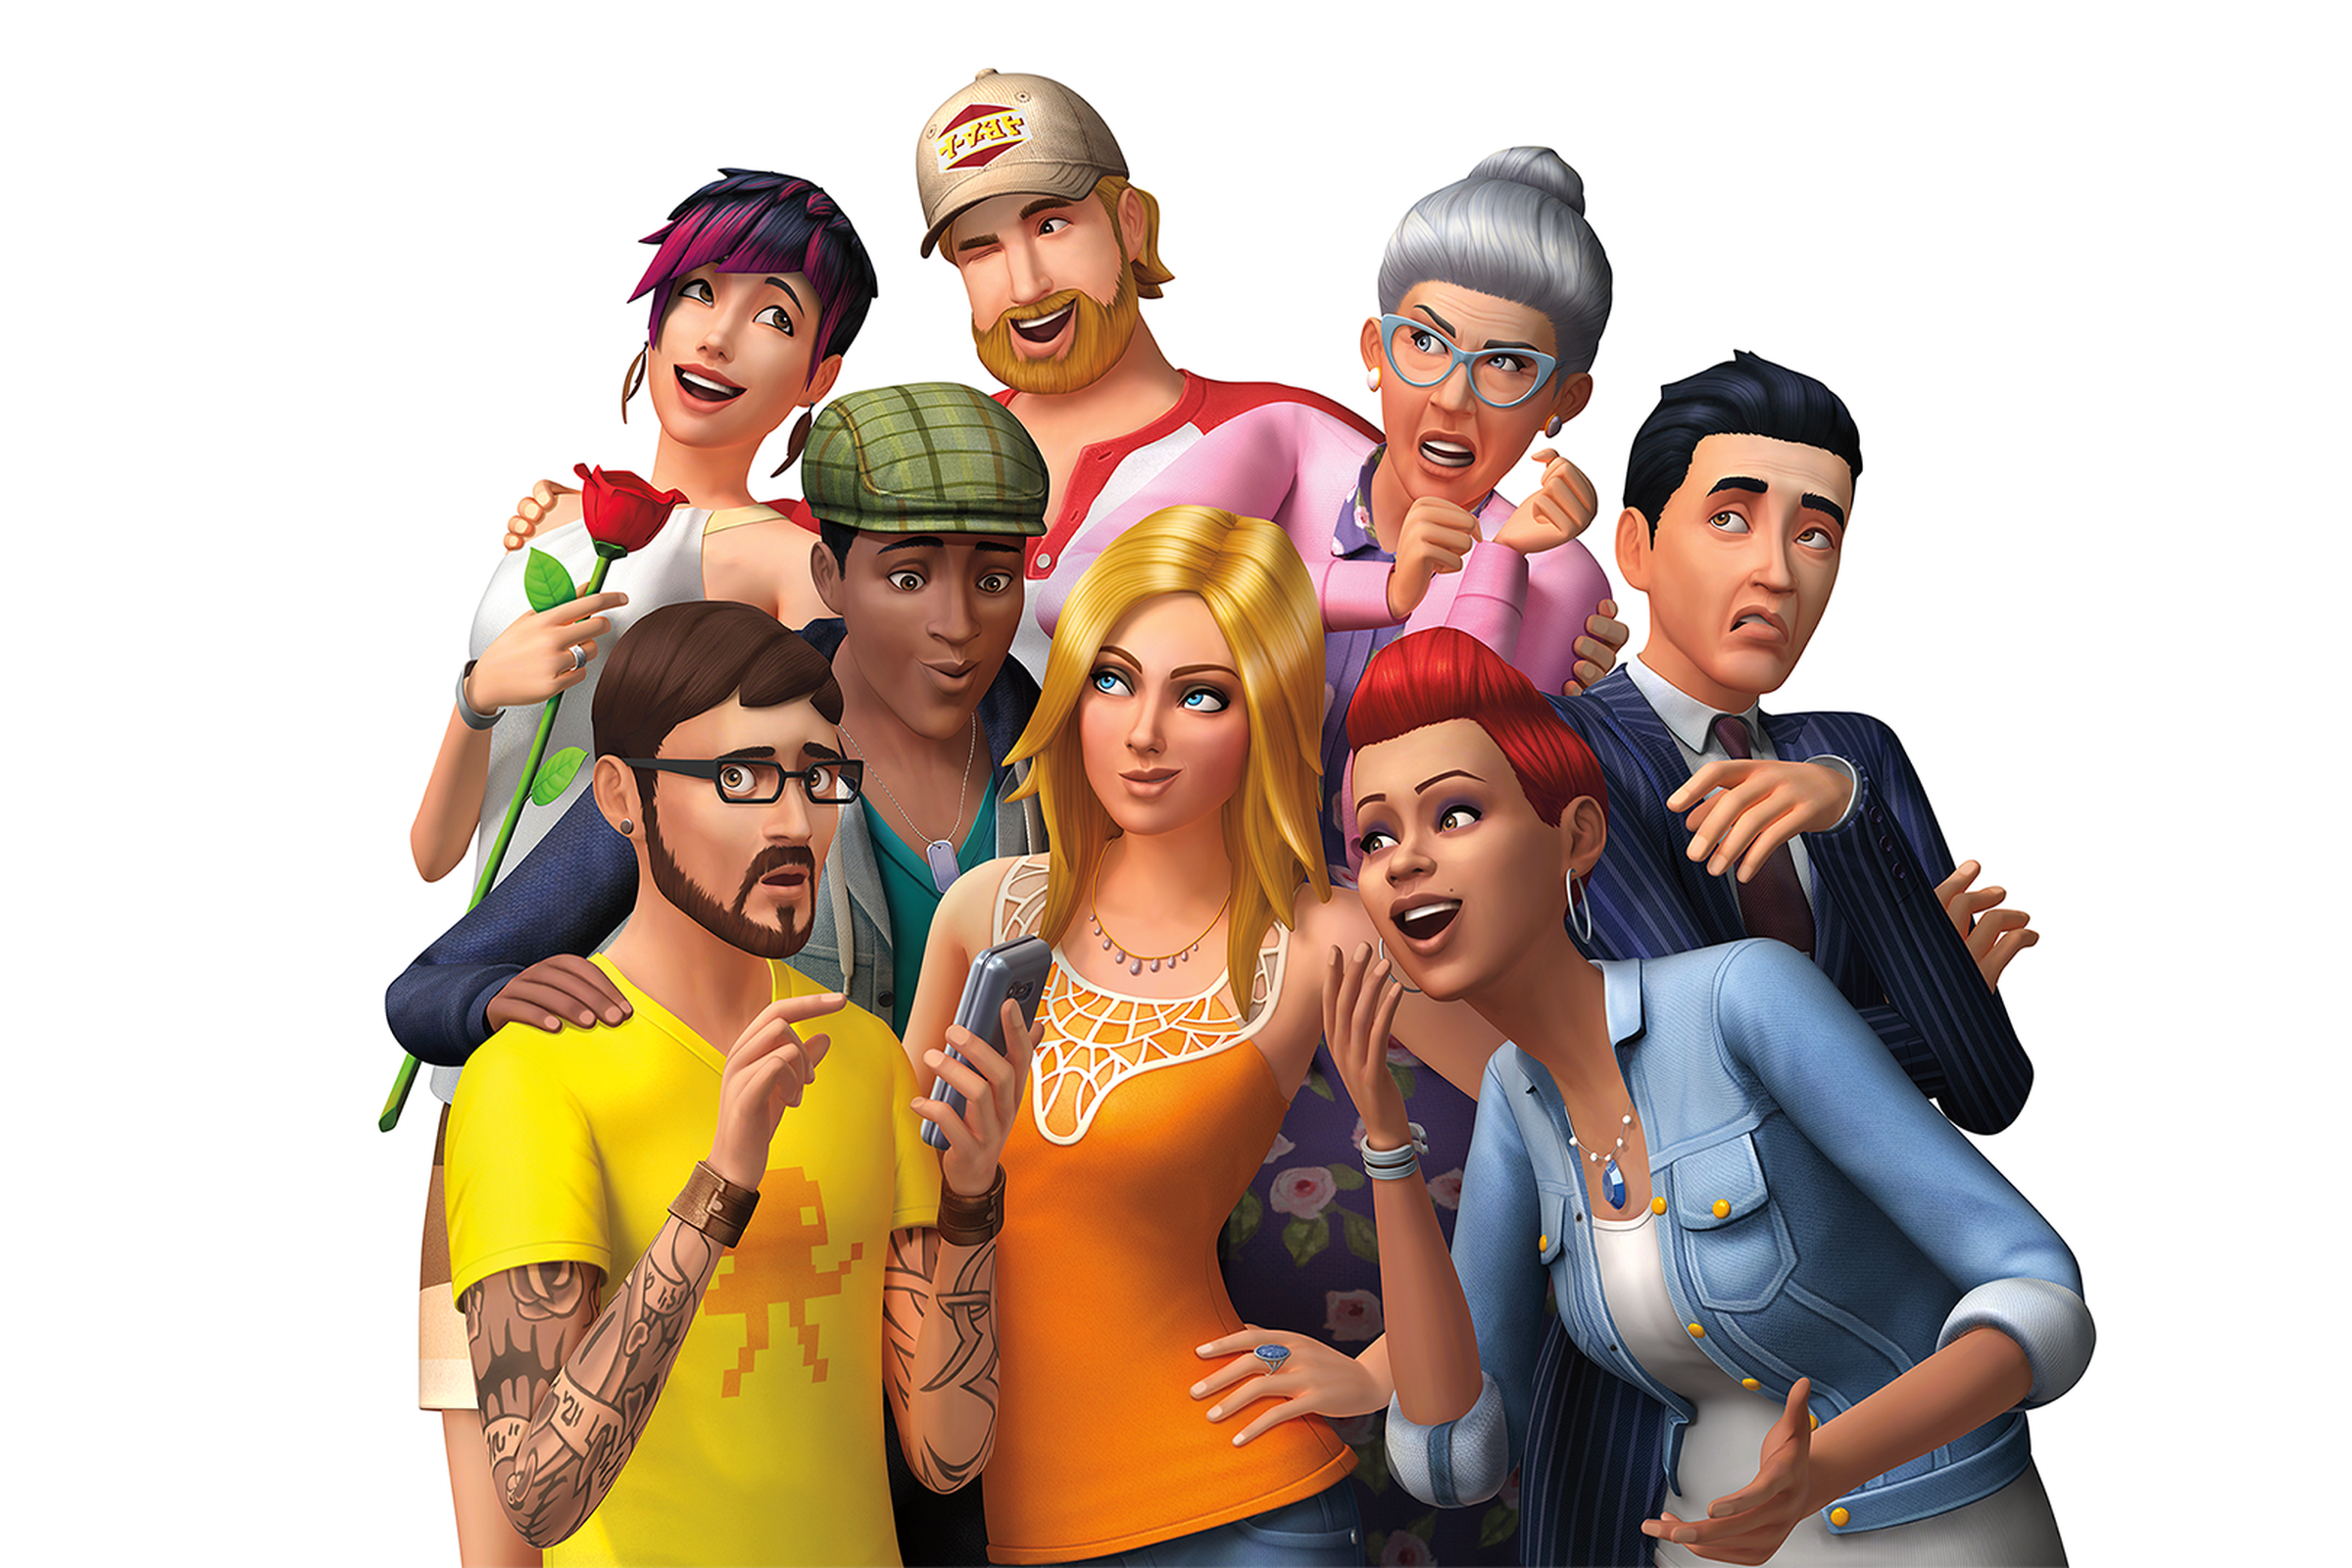 Ilustrasi dari The Sims 4 yang menampilkan koleksi Sims dari berbagai usia, ras, dan gender